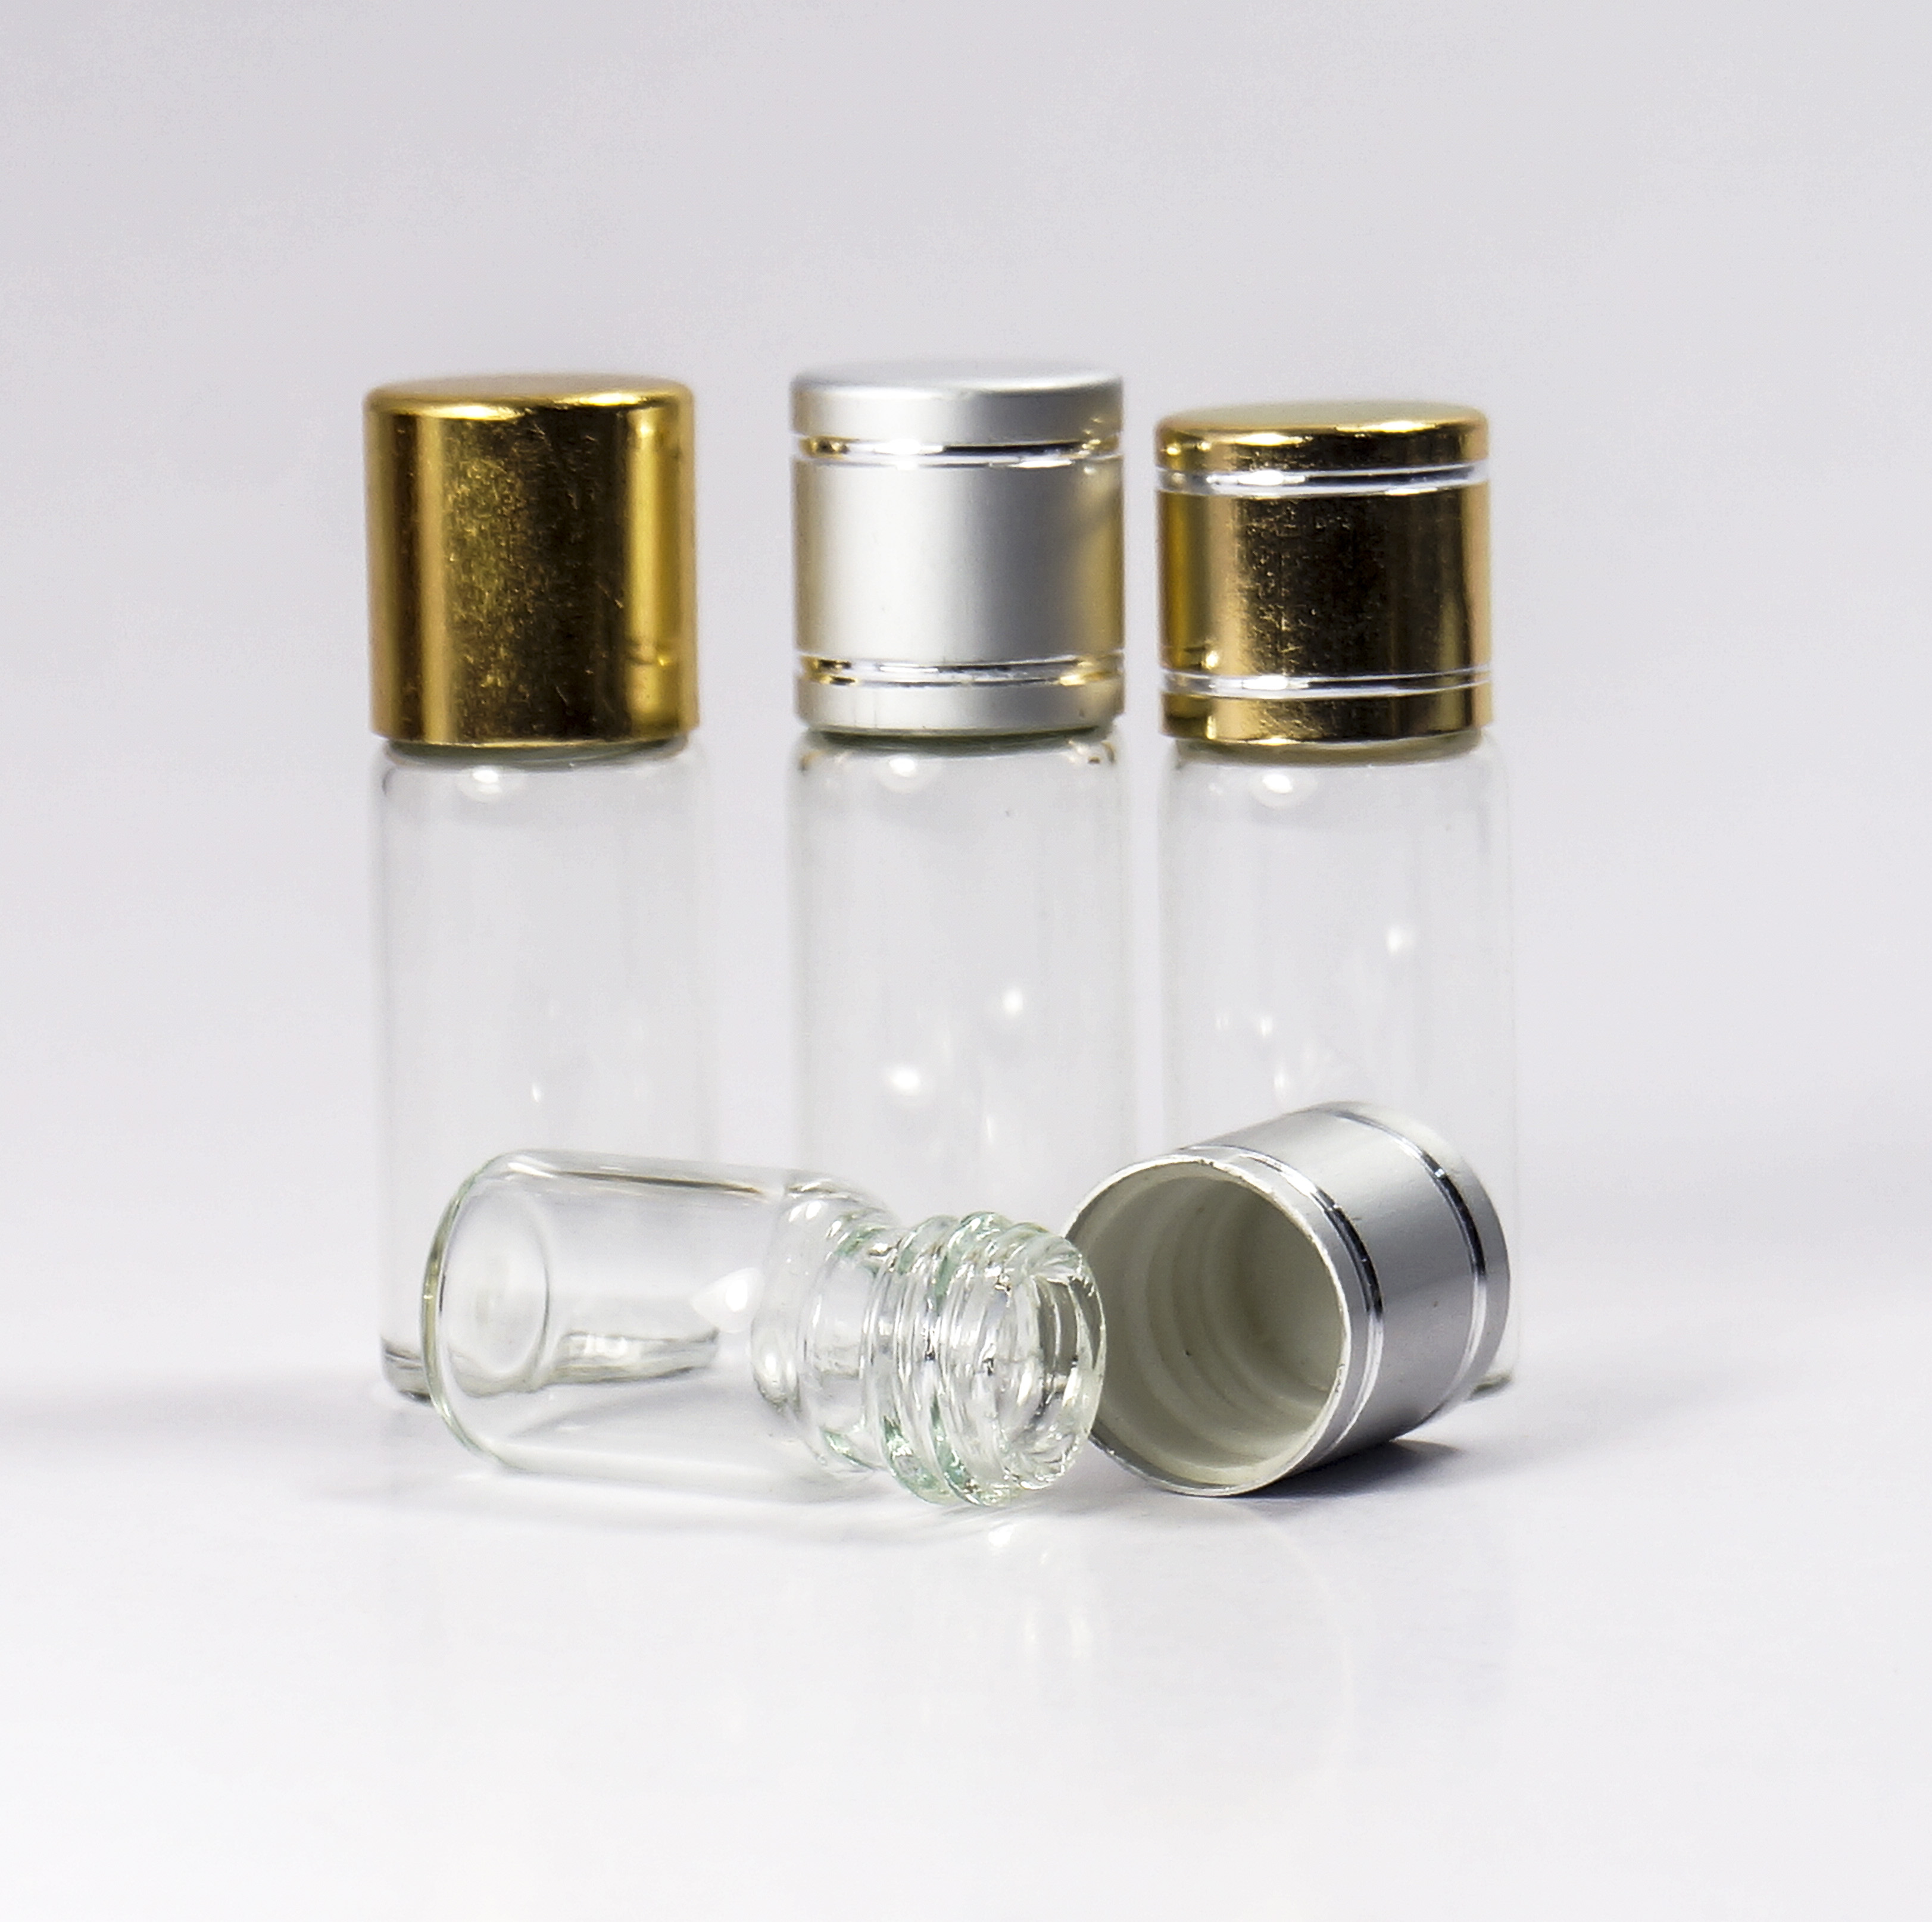 电化铝盖管制玻璃瓶厂家低价直销批发